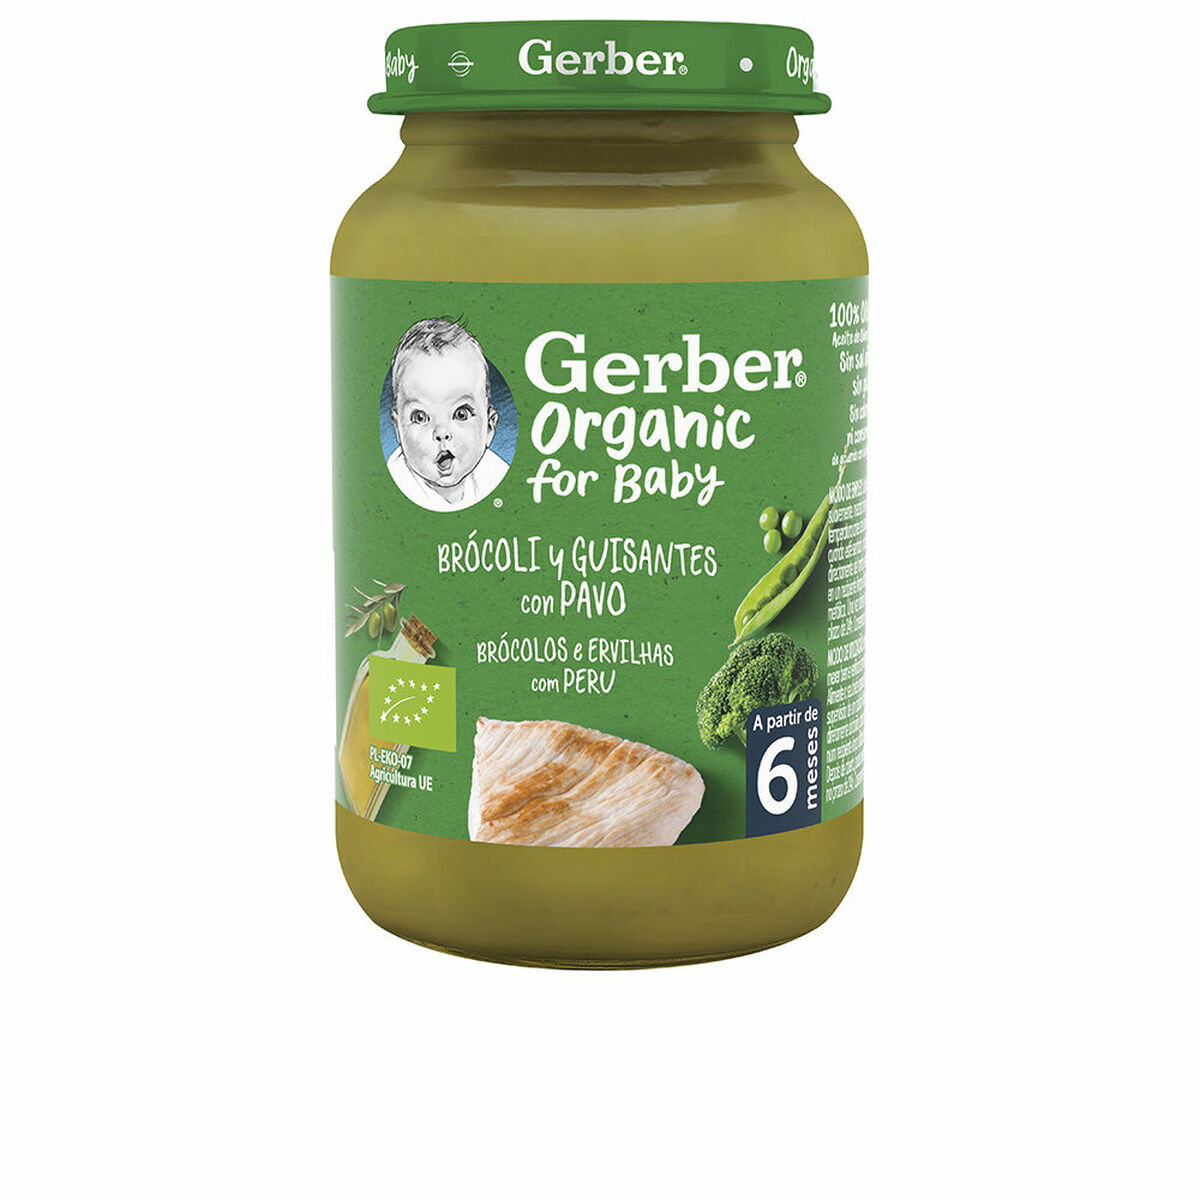 Baby food Nestlé Gerber Organic Pavo Peas Broccoli 190 g